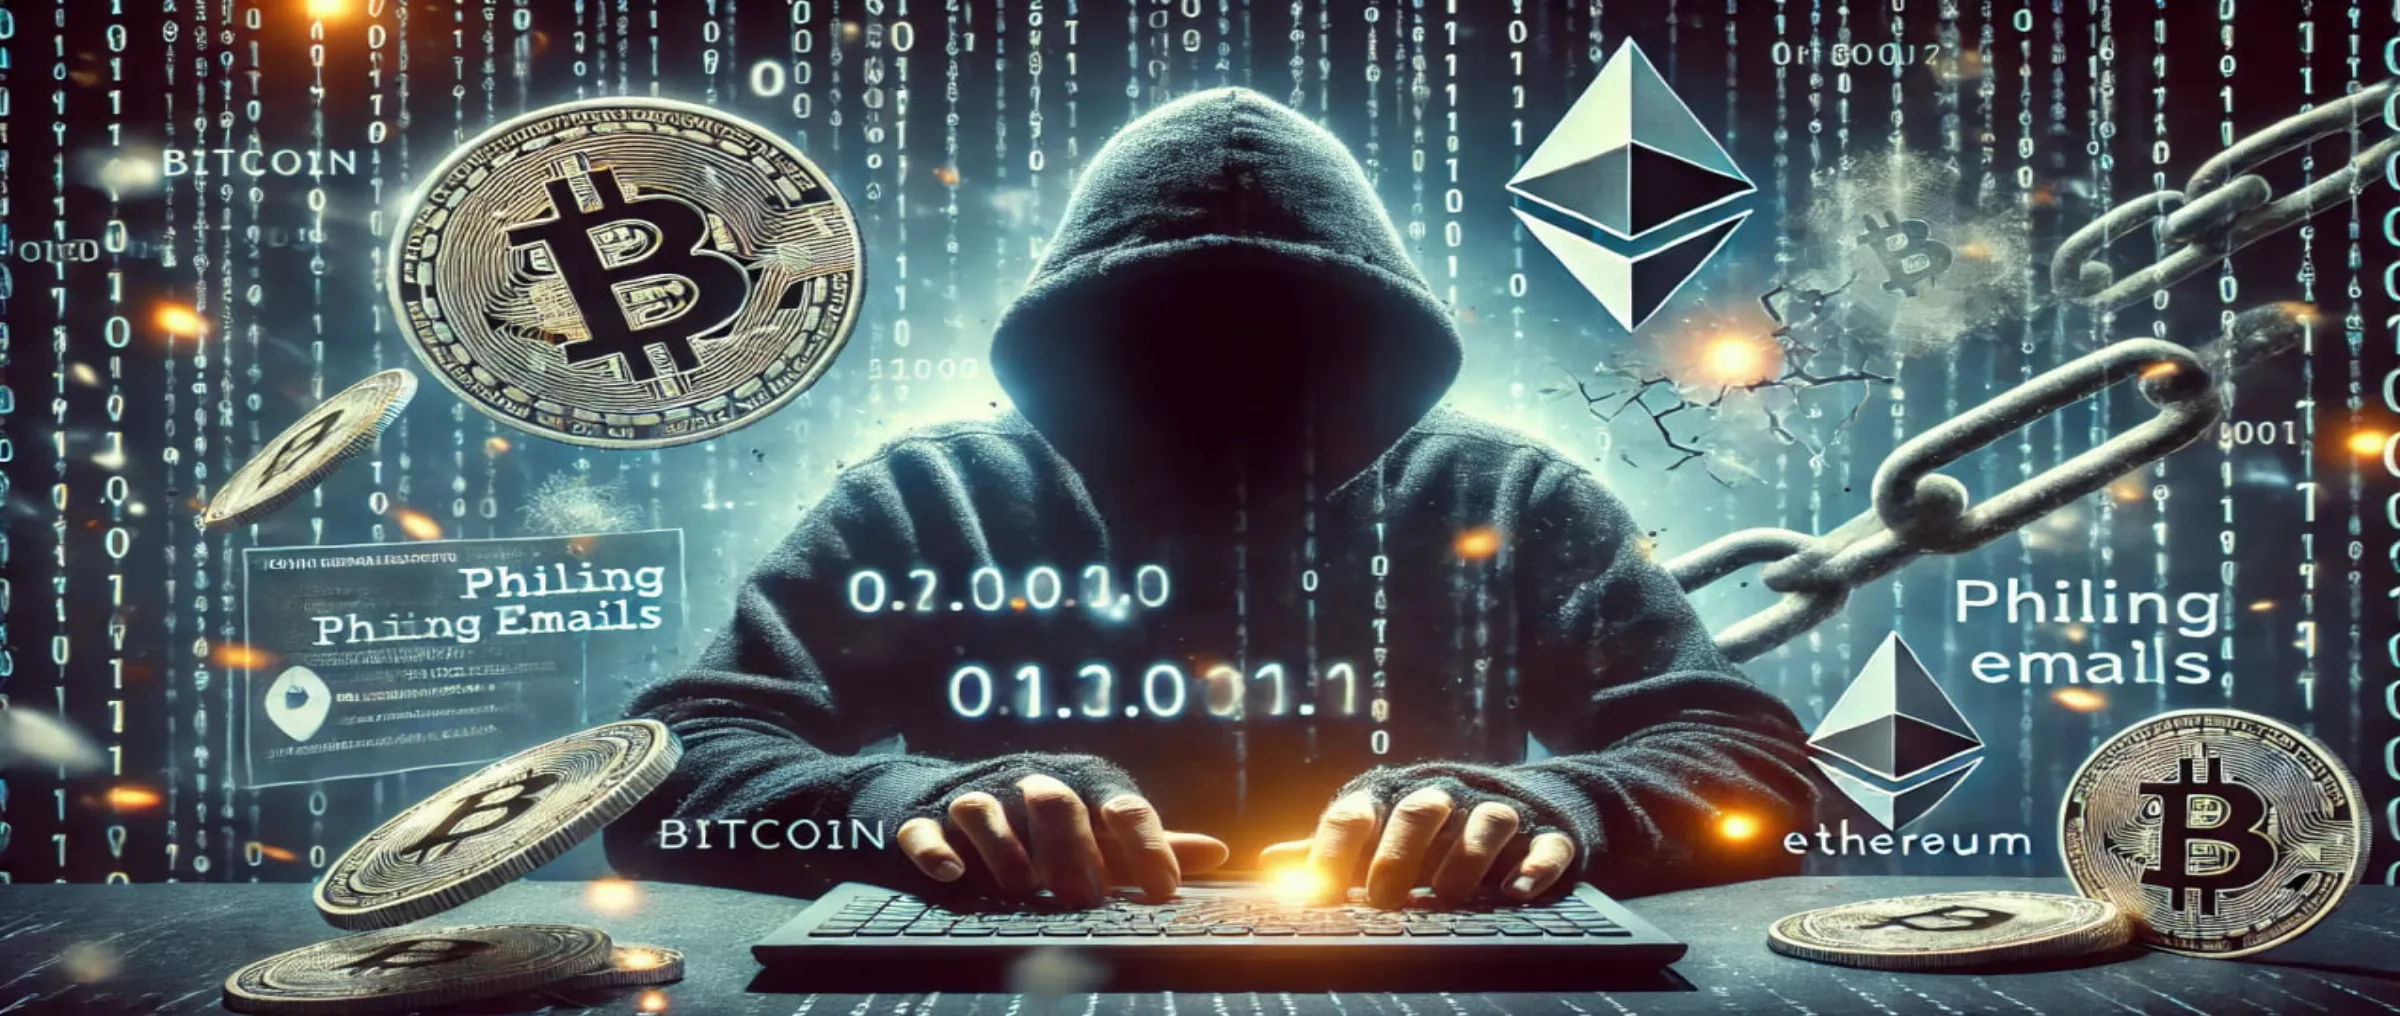 Увеличение хакерских атак и мошенничества в криптоиндустрии во 2 квартале